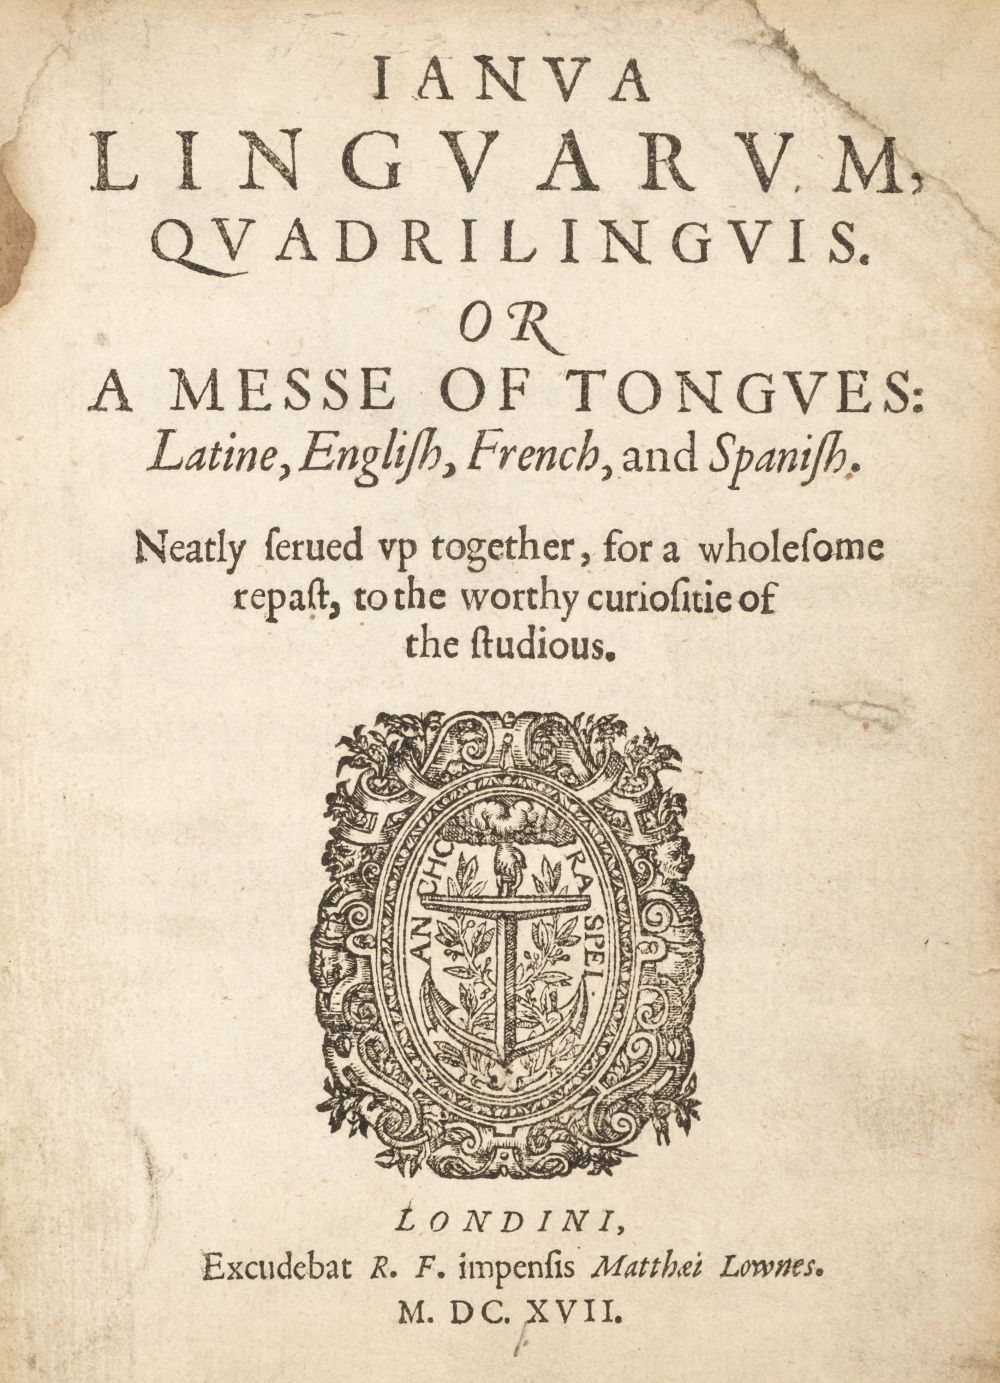 Bathe (William). Ianua Linguarum, Quadrilinguis. Or a Messe of Tongues..., 1617